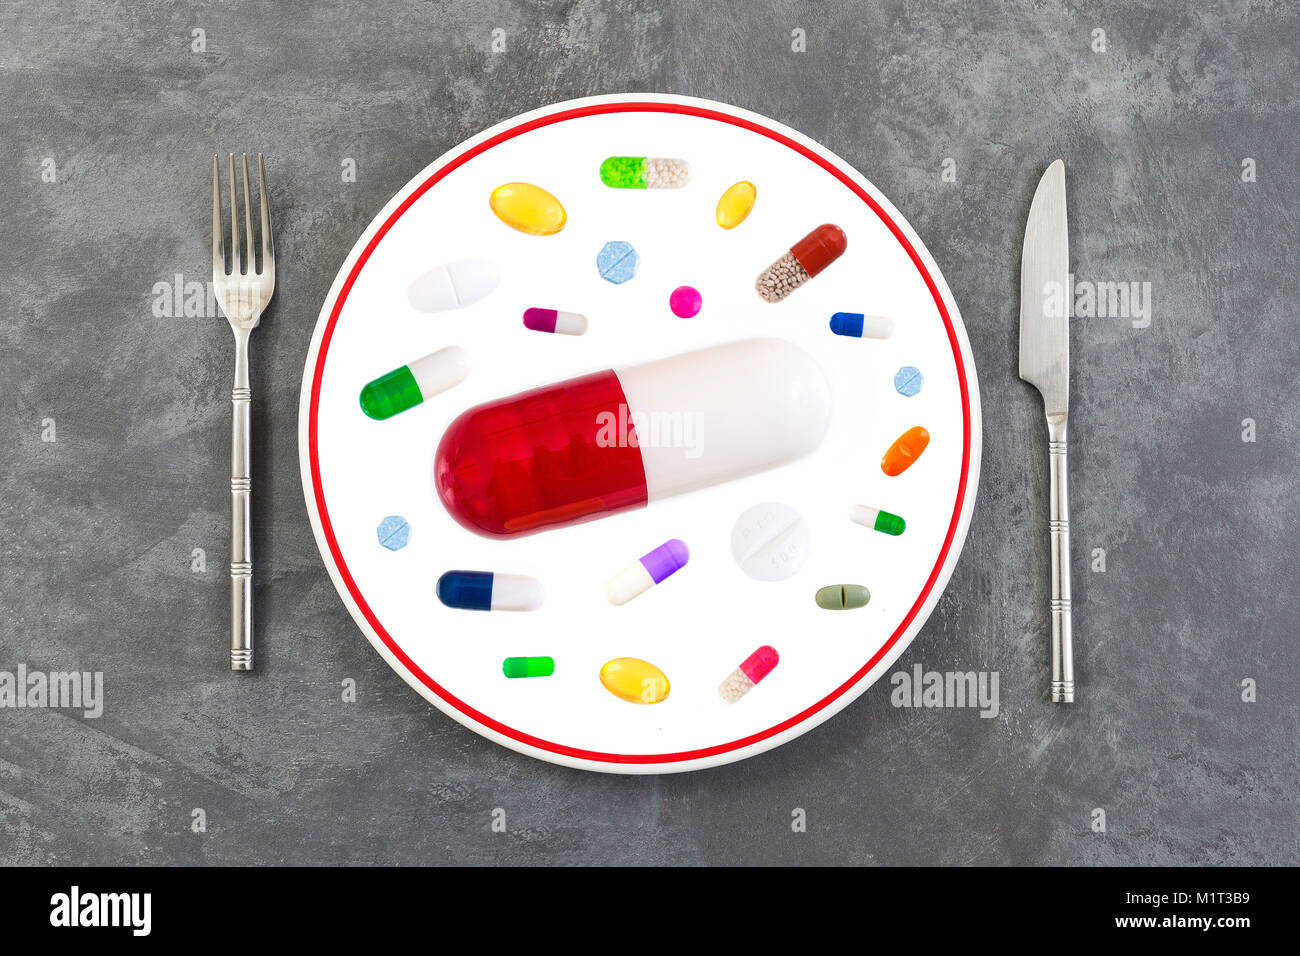 Taille large pilule rouge sur une plaque avec de l'argenterie, au milieu de la médecine colorés sur fond gris ardoise Banque D'Images